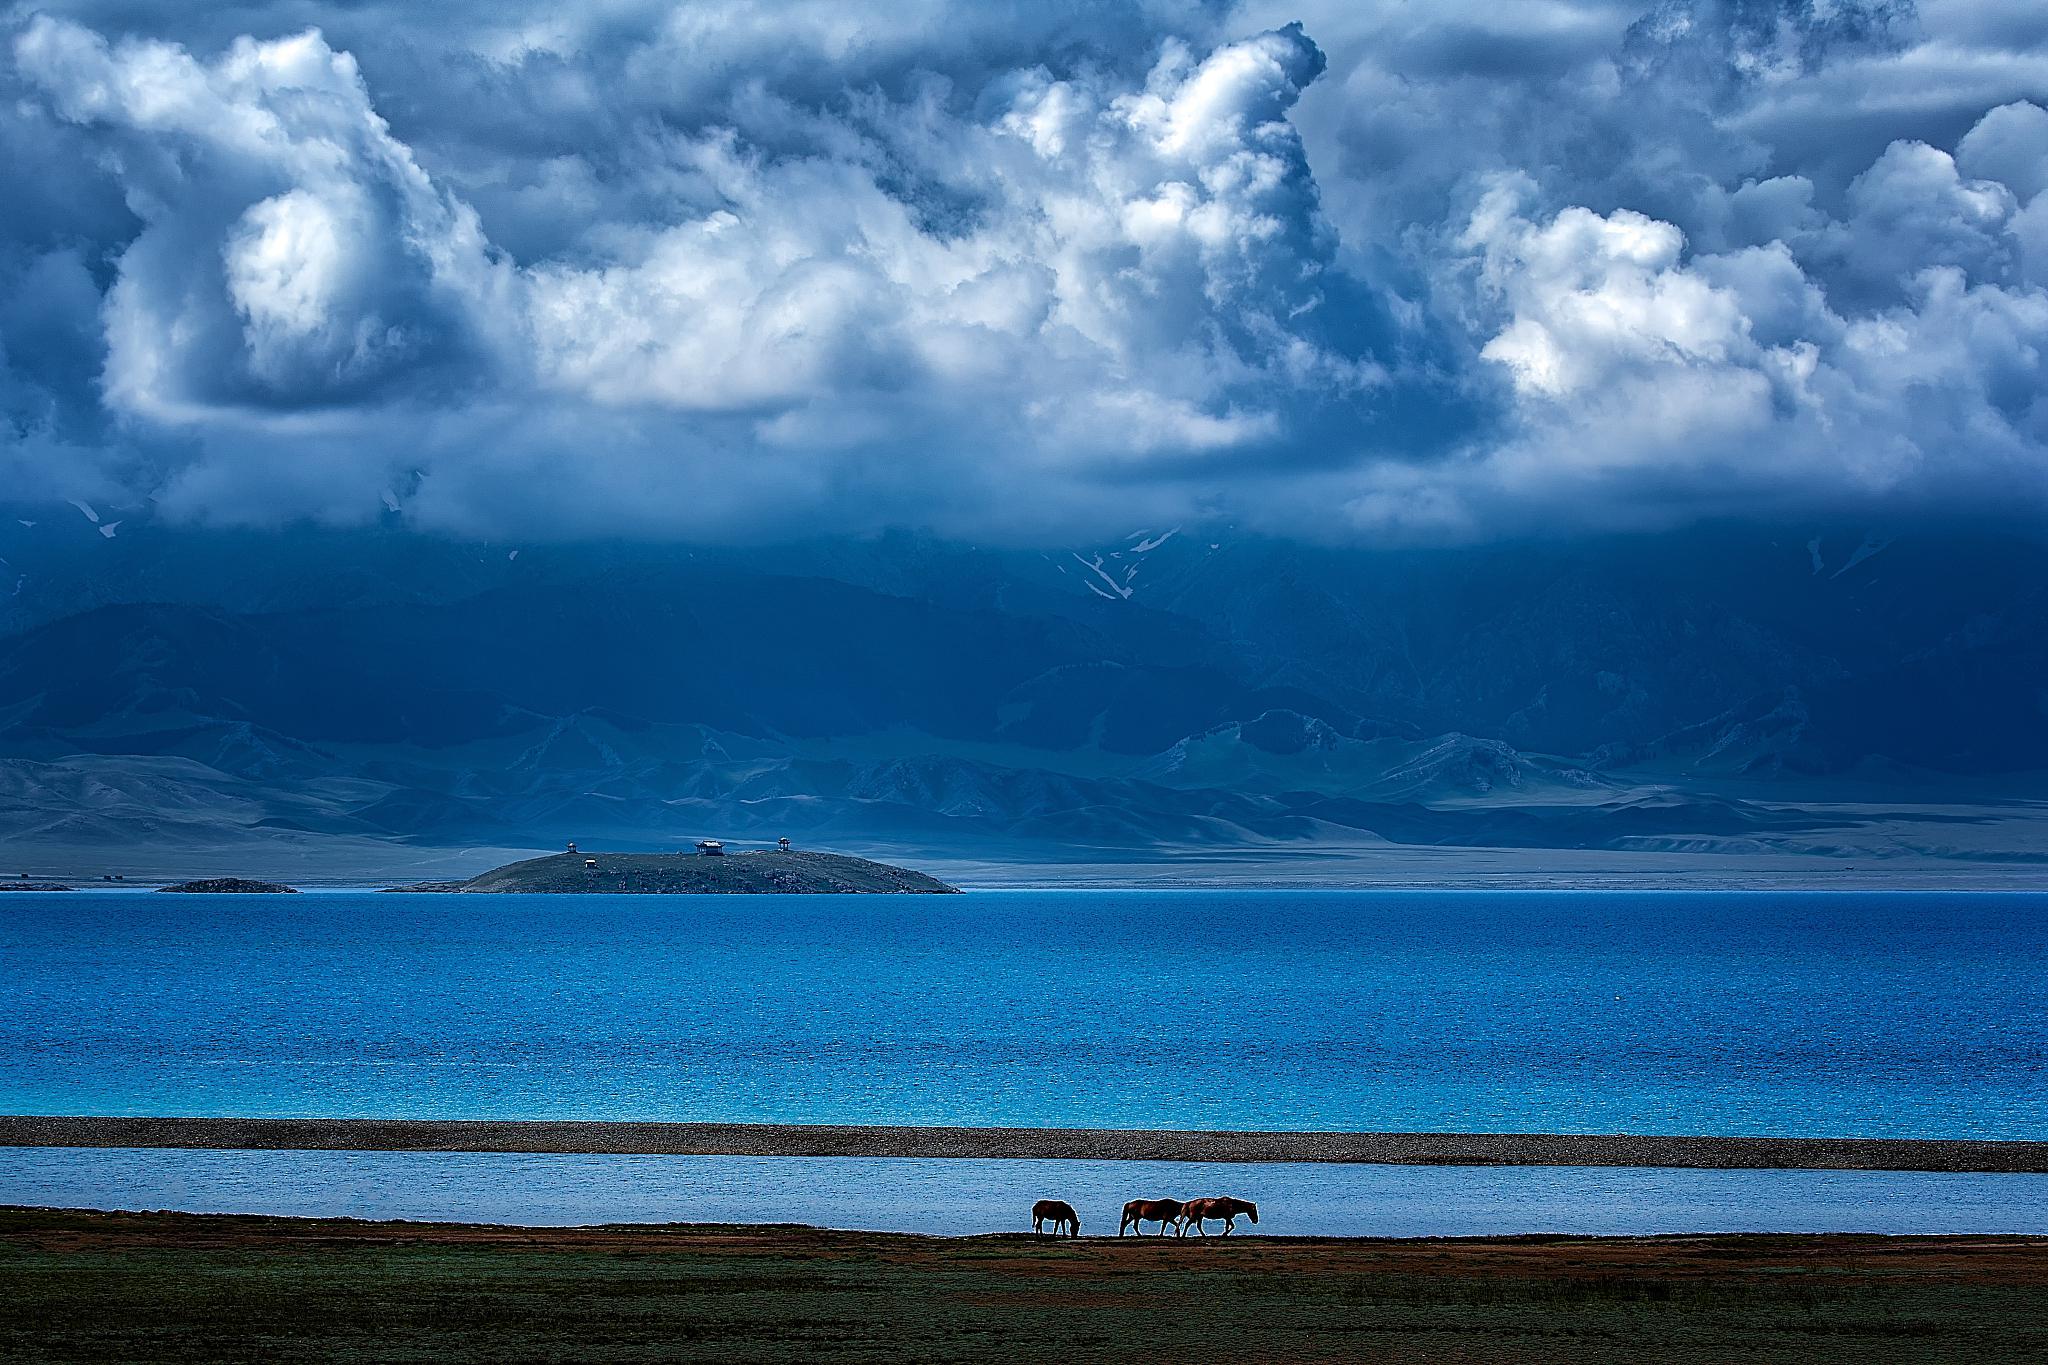 新疆的明珠 赛里木湖是中国新疆地区的一颗明珠,它位于天山山脉中段